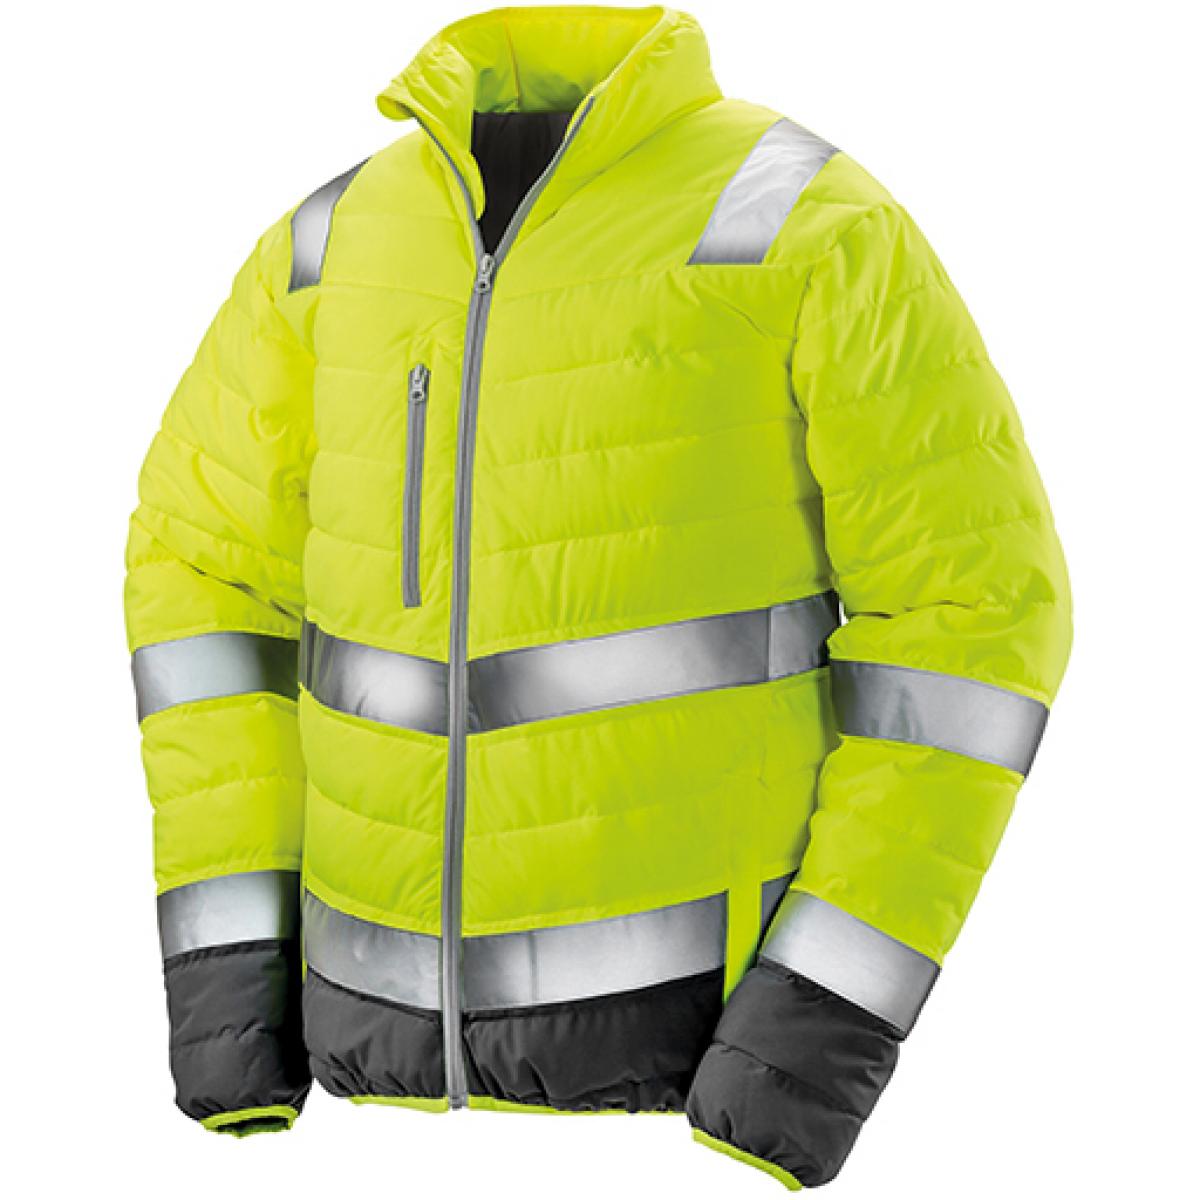 Hersteller: Result Herstellernummer: R325M Artikelbezeichnung: Herren Soft Padded Safety Jacke / ISO EN20471:2013 Klasse 2 Farbe: Fluorescent Yellow/Grey